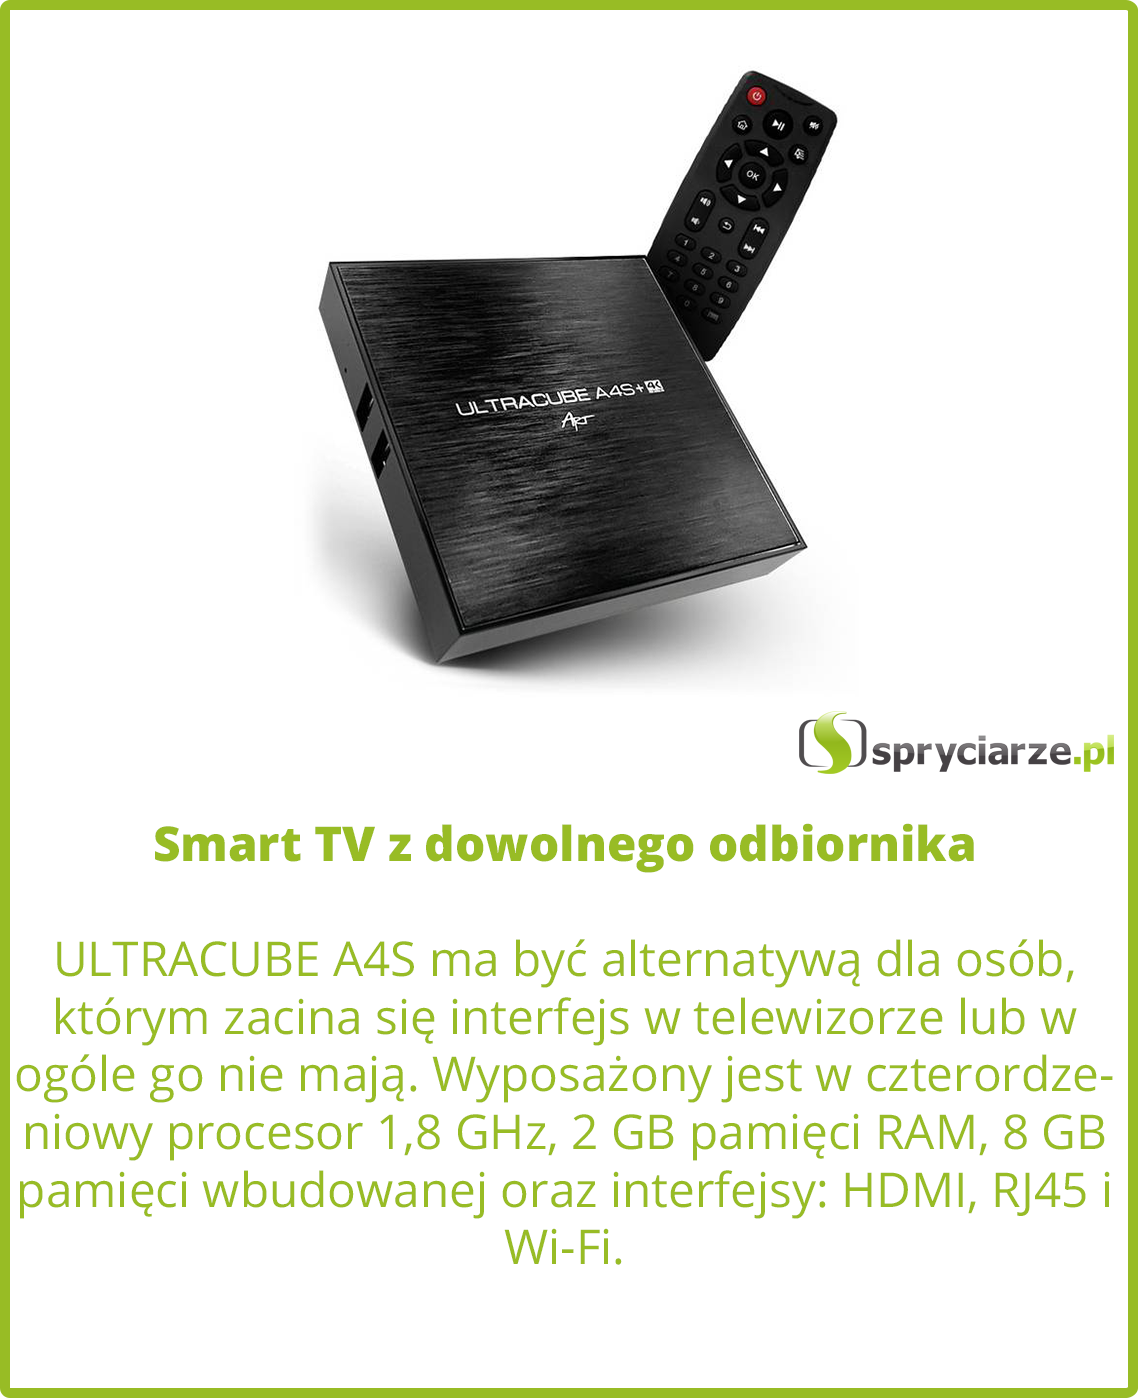 Smart TV z dowolnego odbiornika